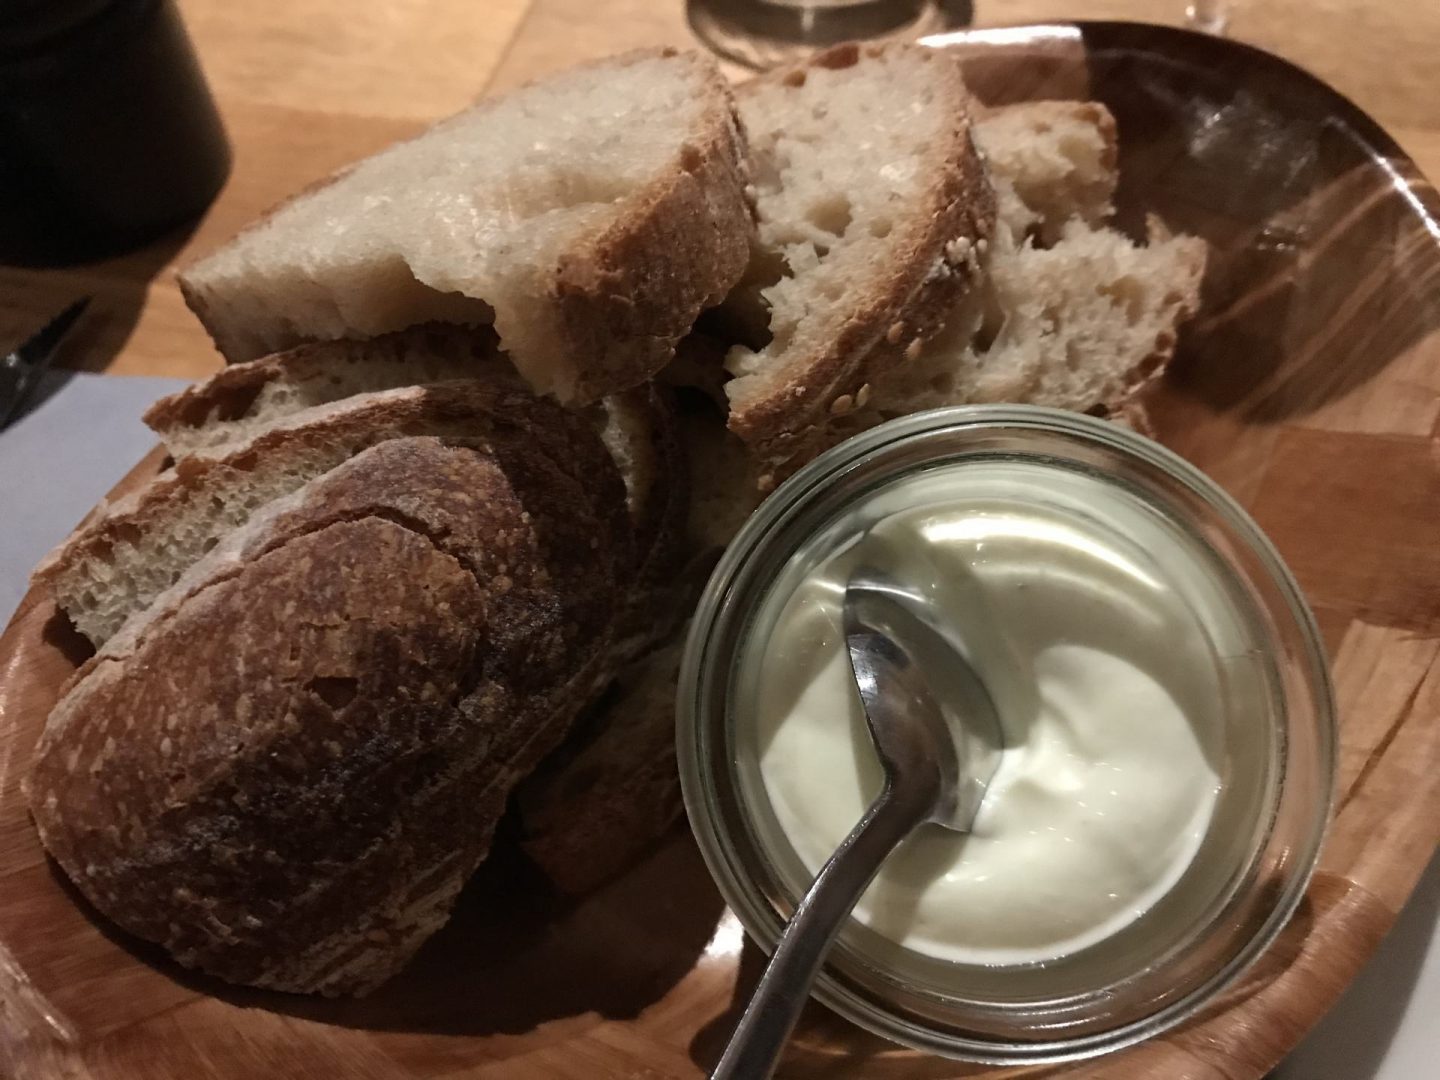 Erfahrung Bewertung Kritik Trattoria Momo Bochum Brot und Dip Foodblog Sternestulle